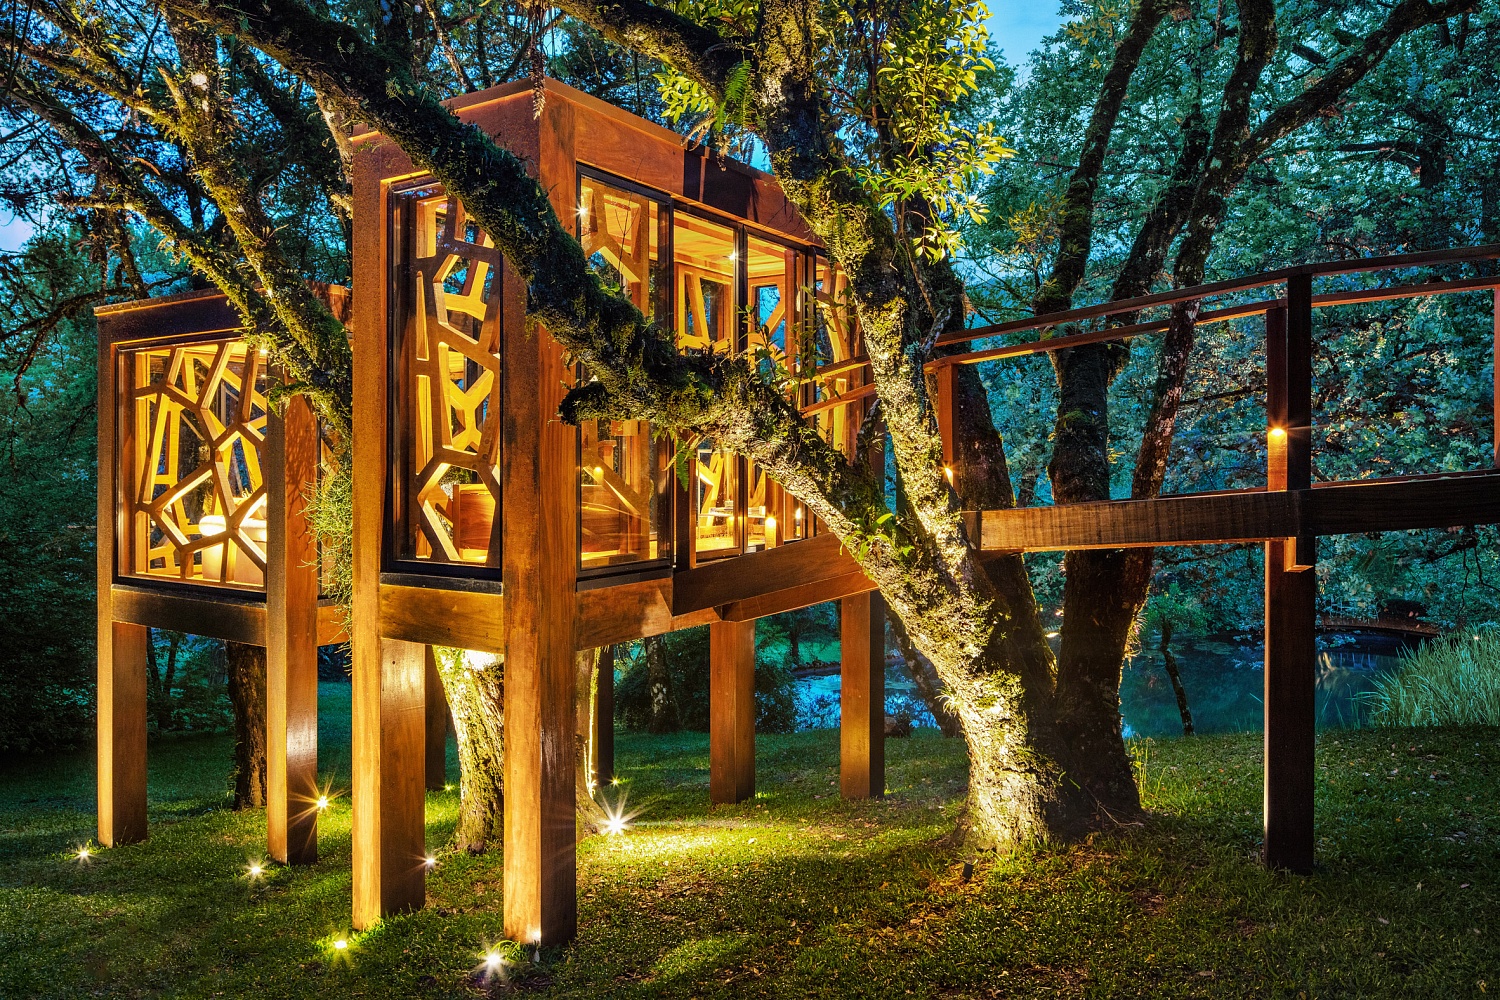 Студия MEMM создаёт Tree House в Бразилии, чтобы раскрыть «игривую внутреннюю сущность»